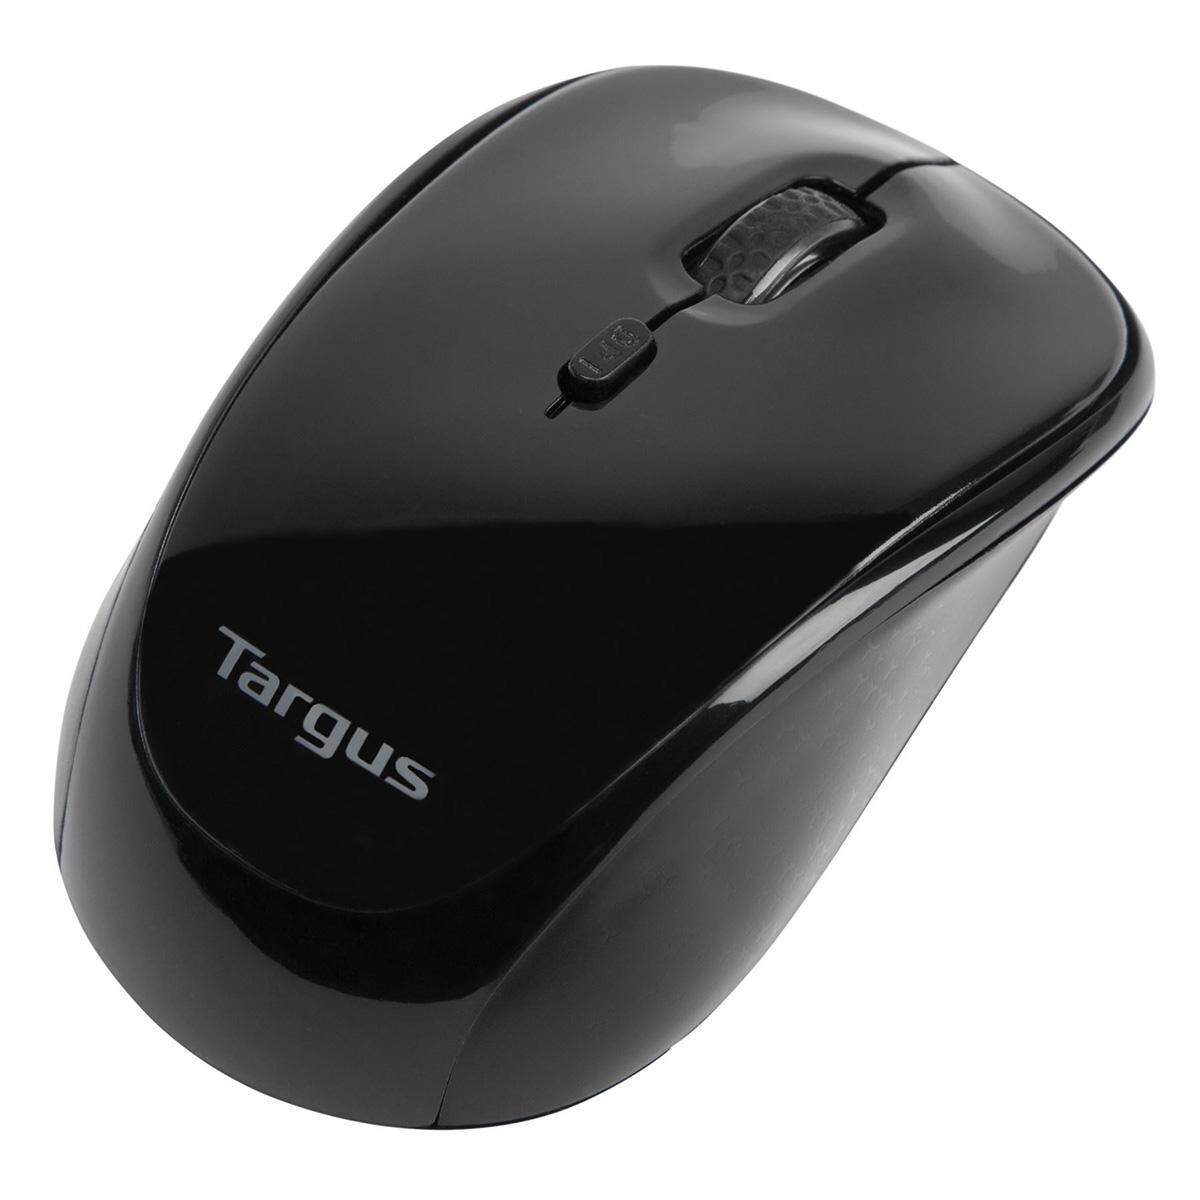 TARGUS AMW620 W620 2.4GHz WIRELESS 4 KEYS 1600DPI OPTICAL MOUSE WITH USB RECEIVER